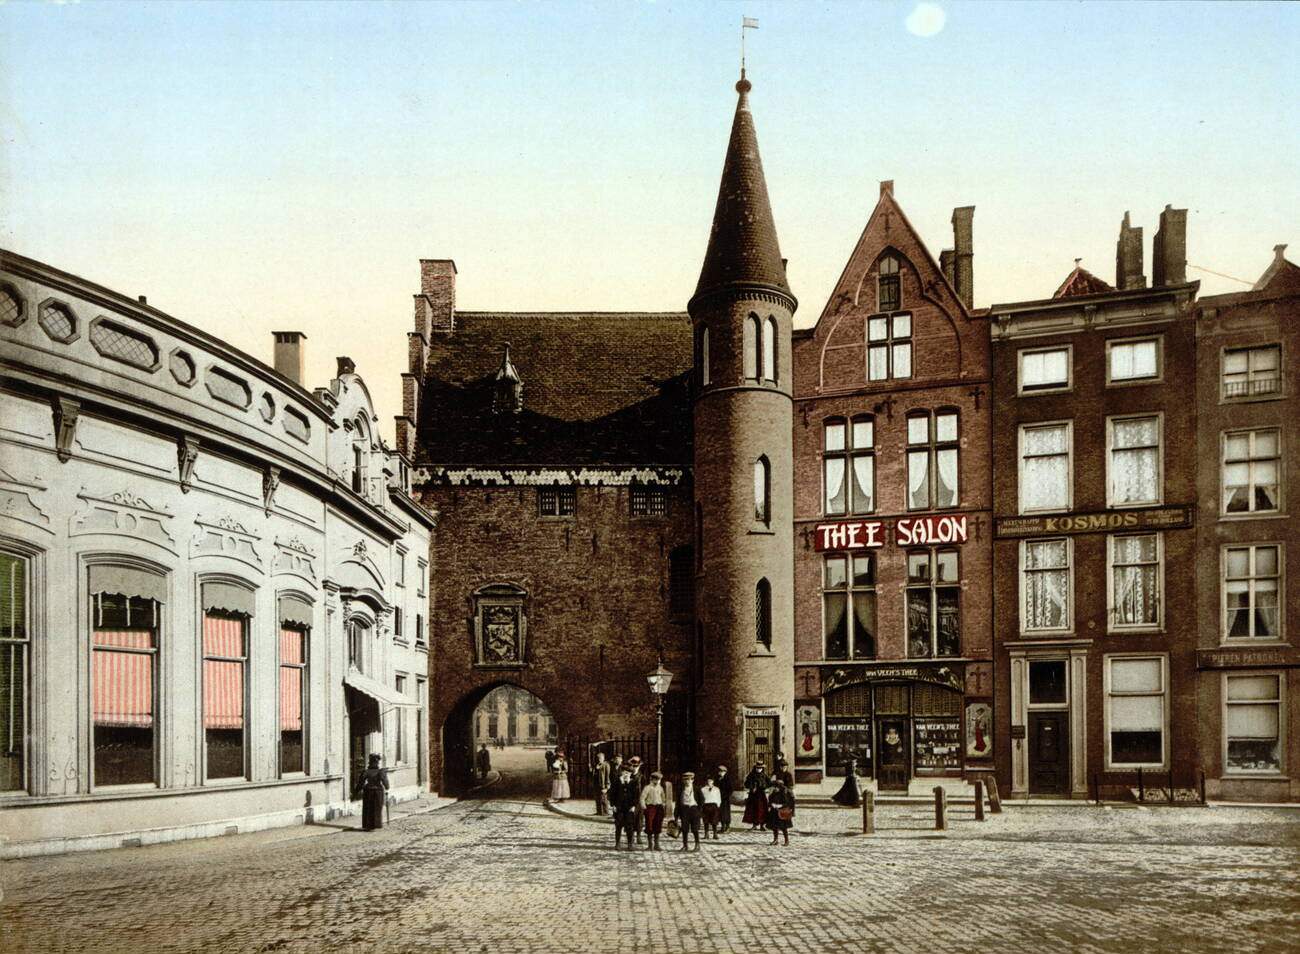 The Gevangenpoort (Prisoner's Gate), in The Hague, Netherlands, 1900s